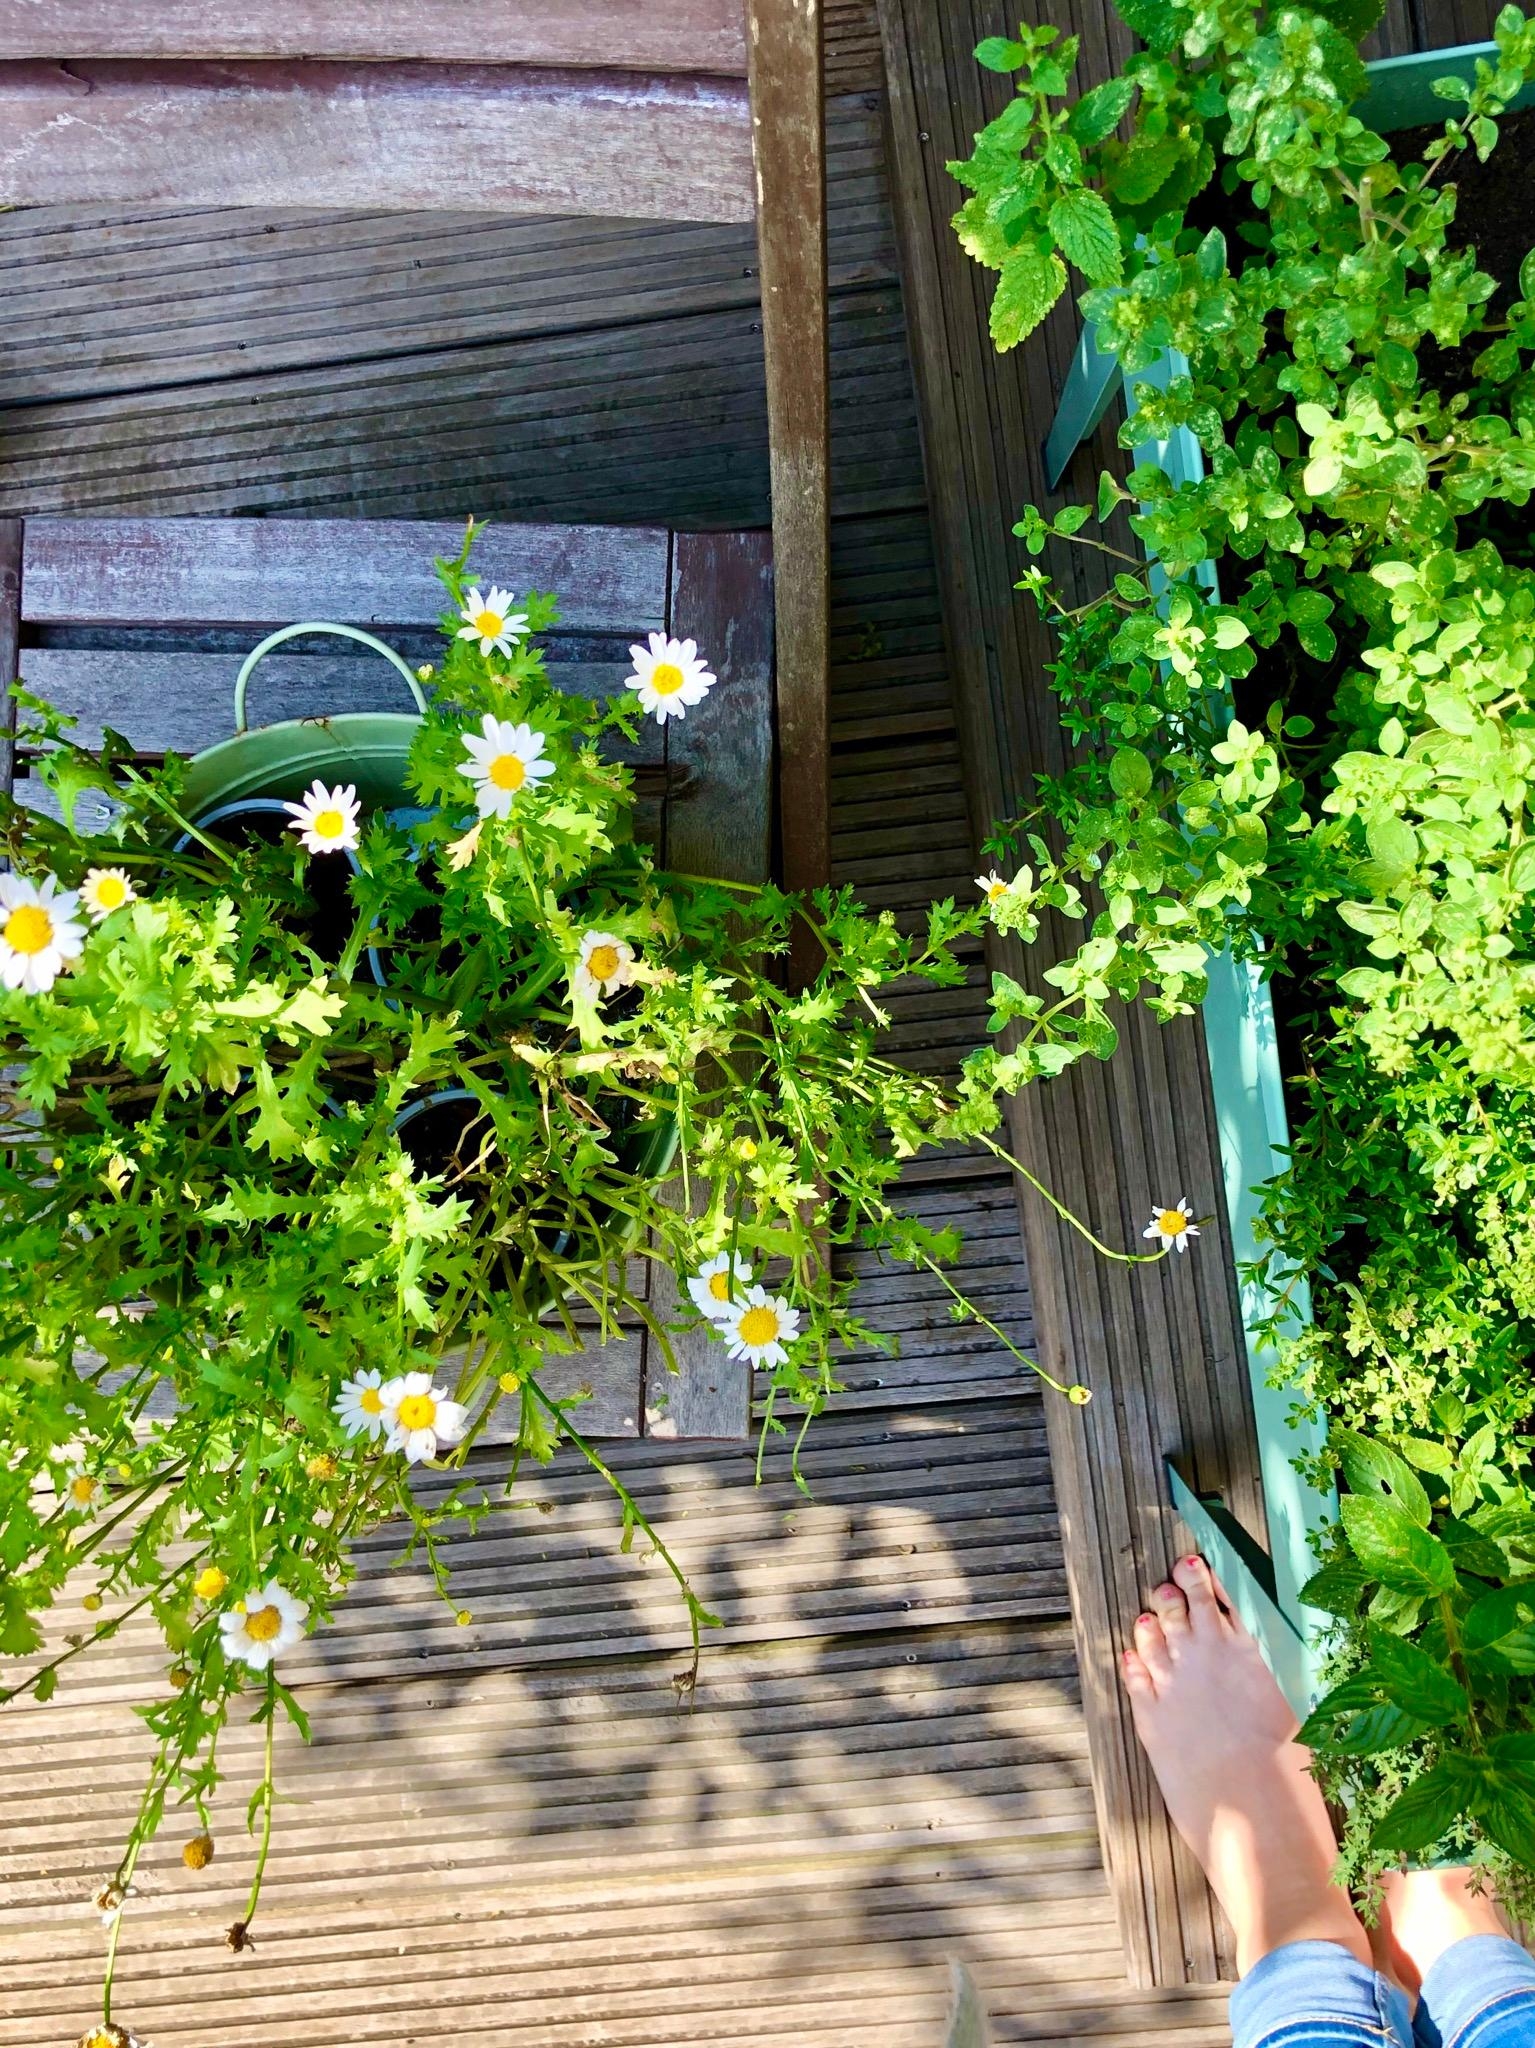 Warten auf den Sommer und vor allem Sonne ☀️ #outdoor #minihochbeet #livingchallenge #terrasse 